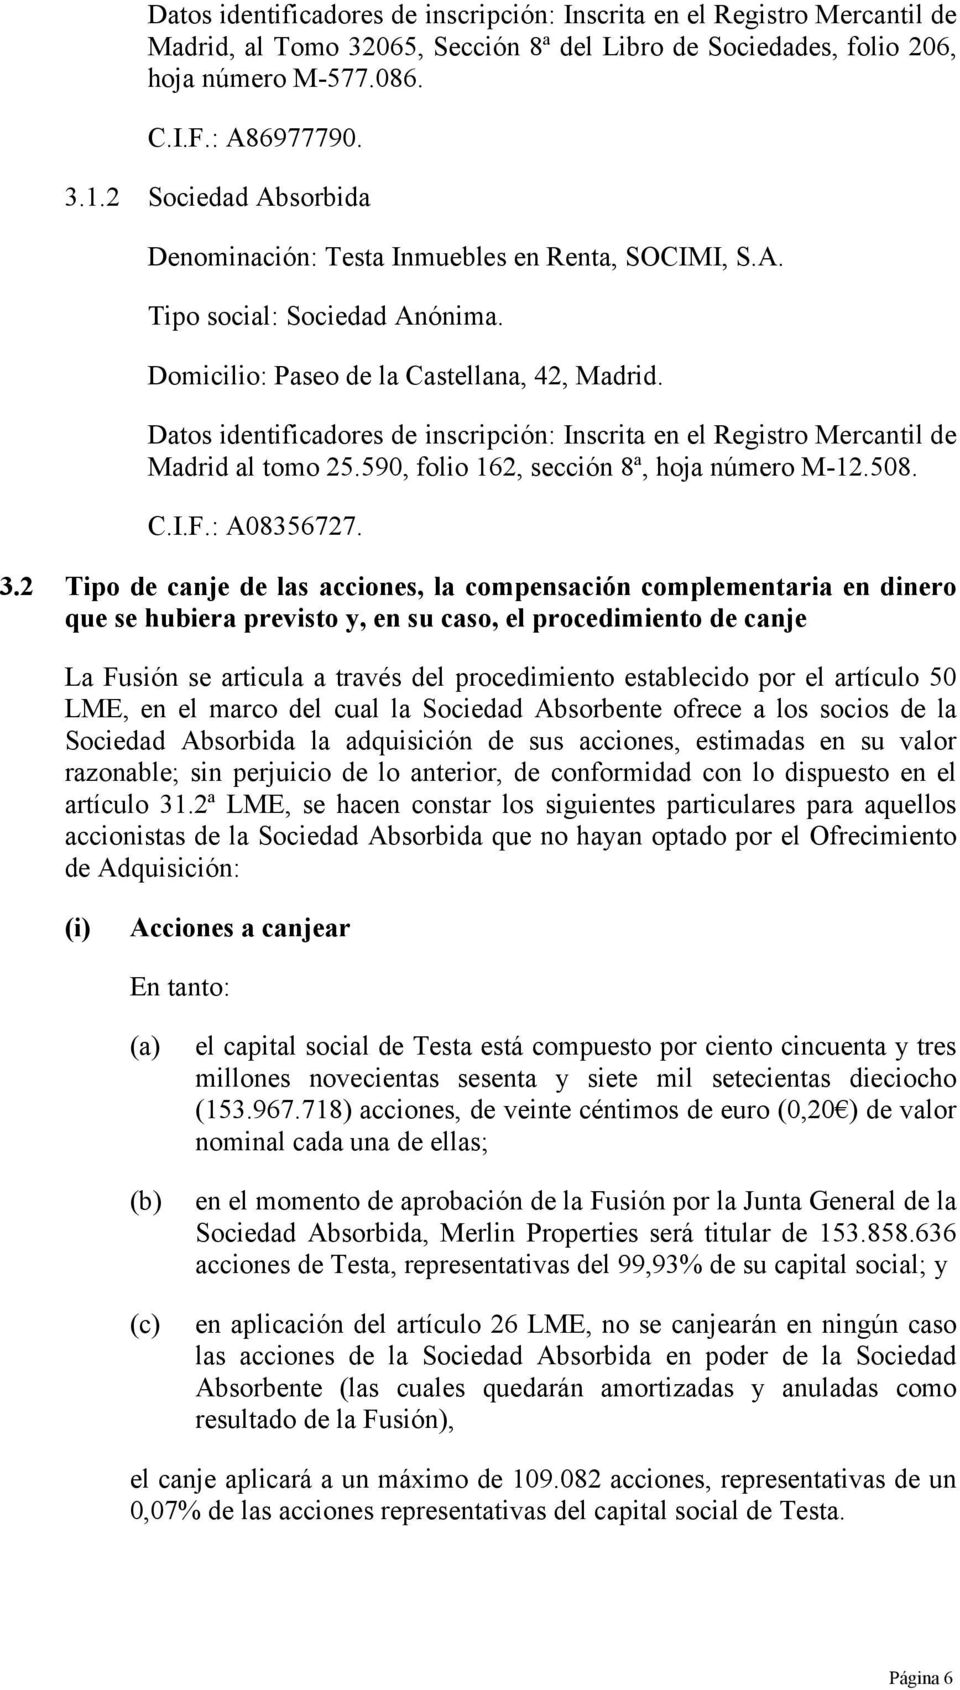 Datos identificadores de inscripción: Inscrita en el Registro Mercantil de Madrid al tomo 25.590, folio 162, sección 8ª, hoja número M-12.508. C.I.F.: A08356727. 3.